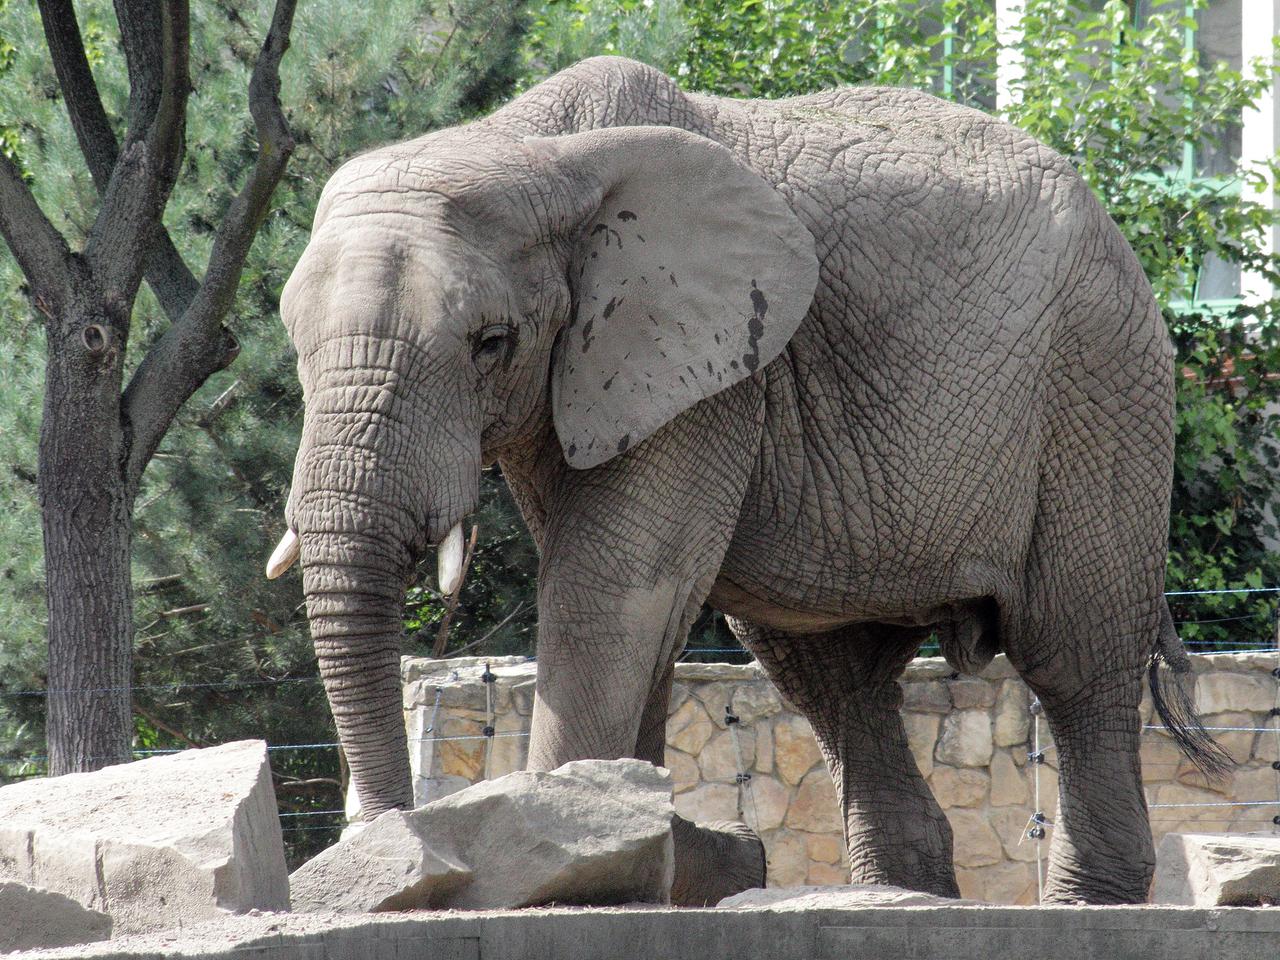 Postawcie słonia na Szlakowisku, będzie większą atrakcją niż winniczka. Ostro na sesji miejskiej